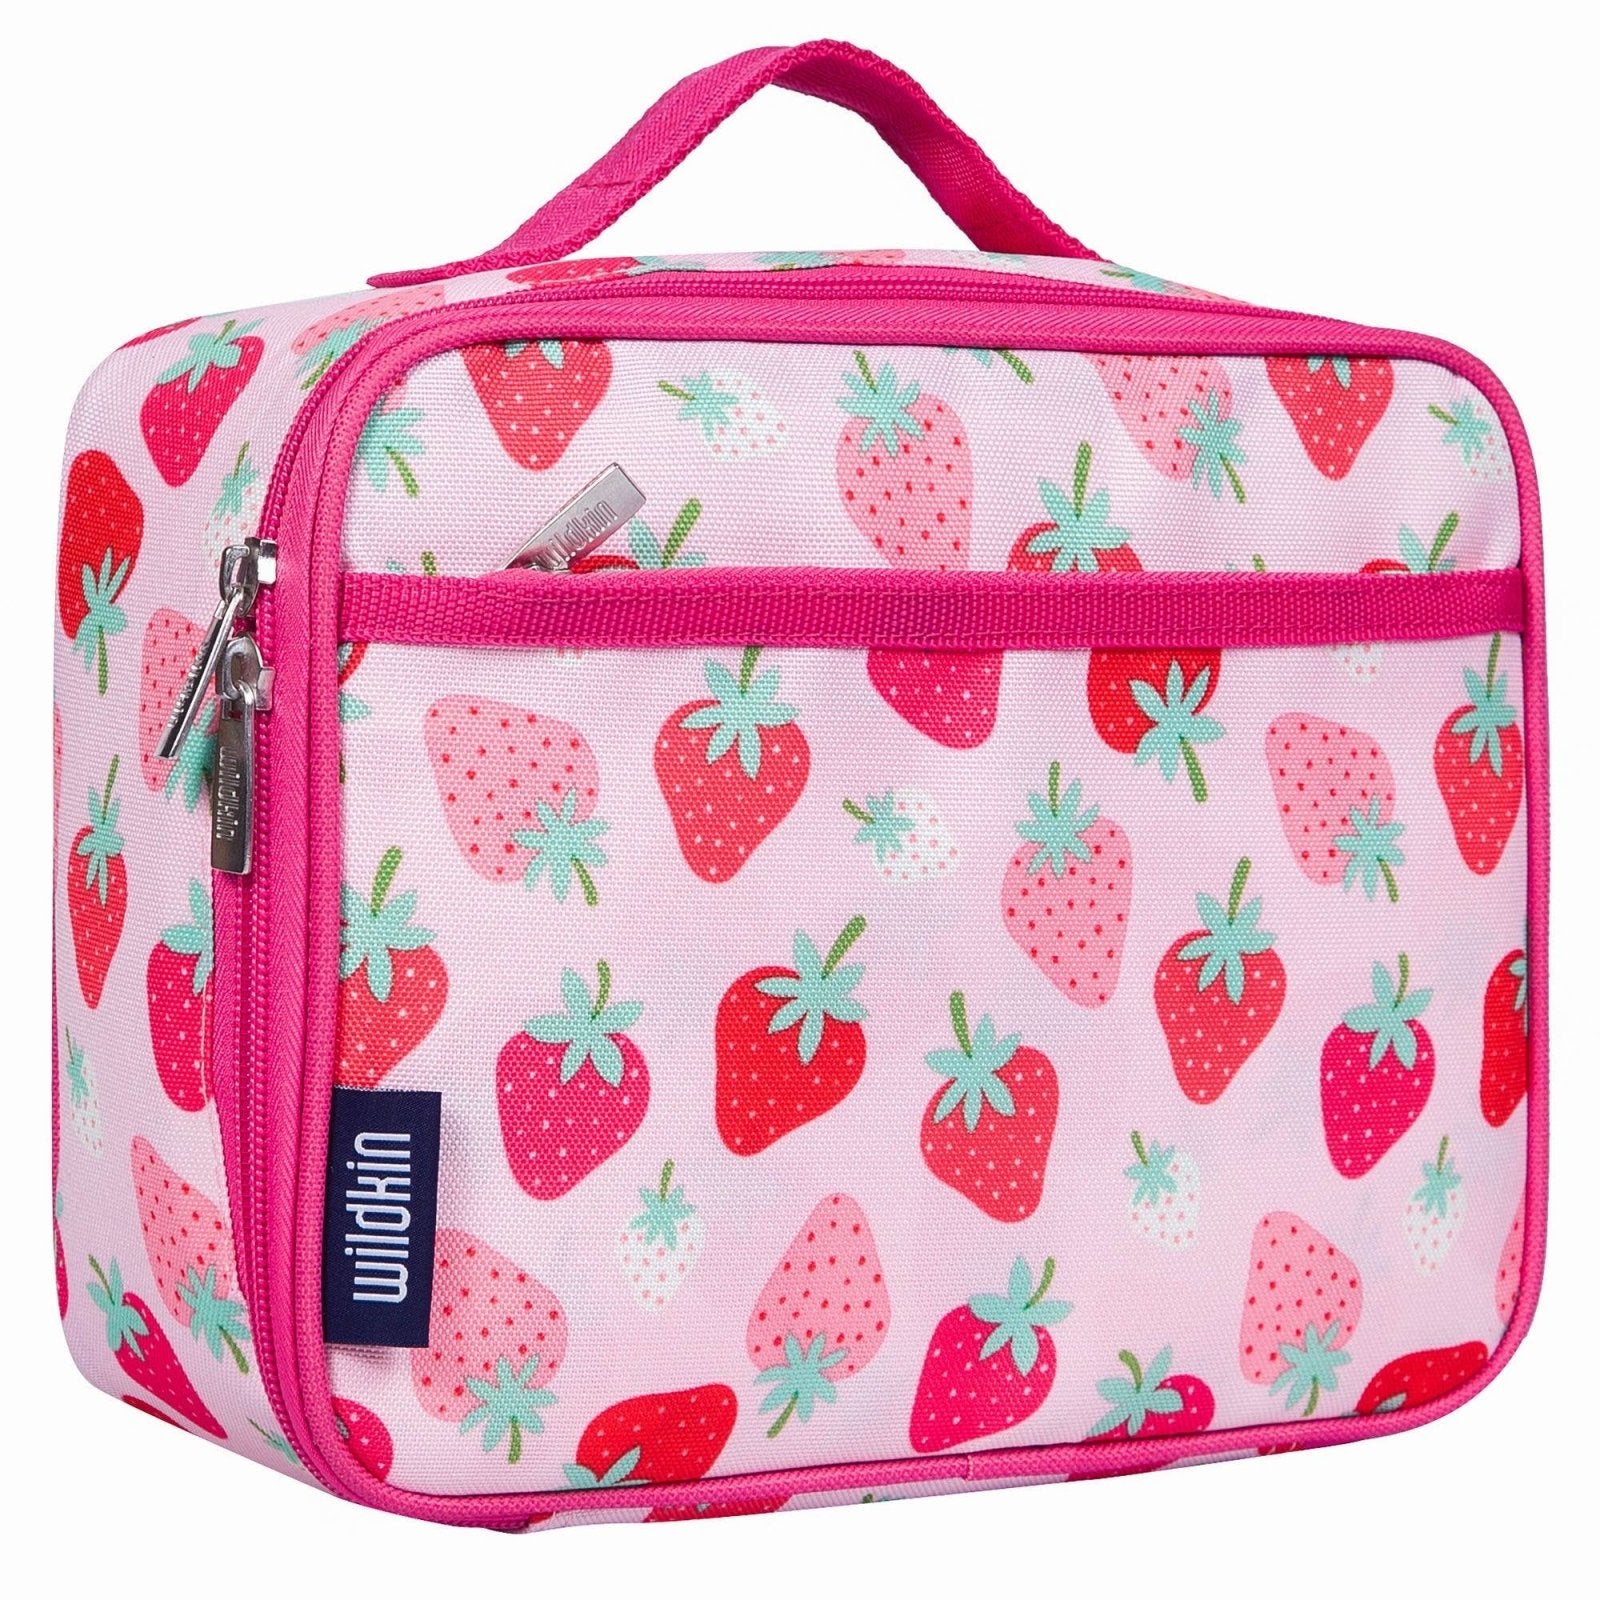 https://www.honeypiekids.com/cdn/shop/products/wildkin-strawberry-patch-kids-lunch-box-honeypiekids-kids-boutique-640346.jpg?v=1690481539